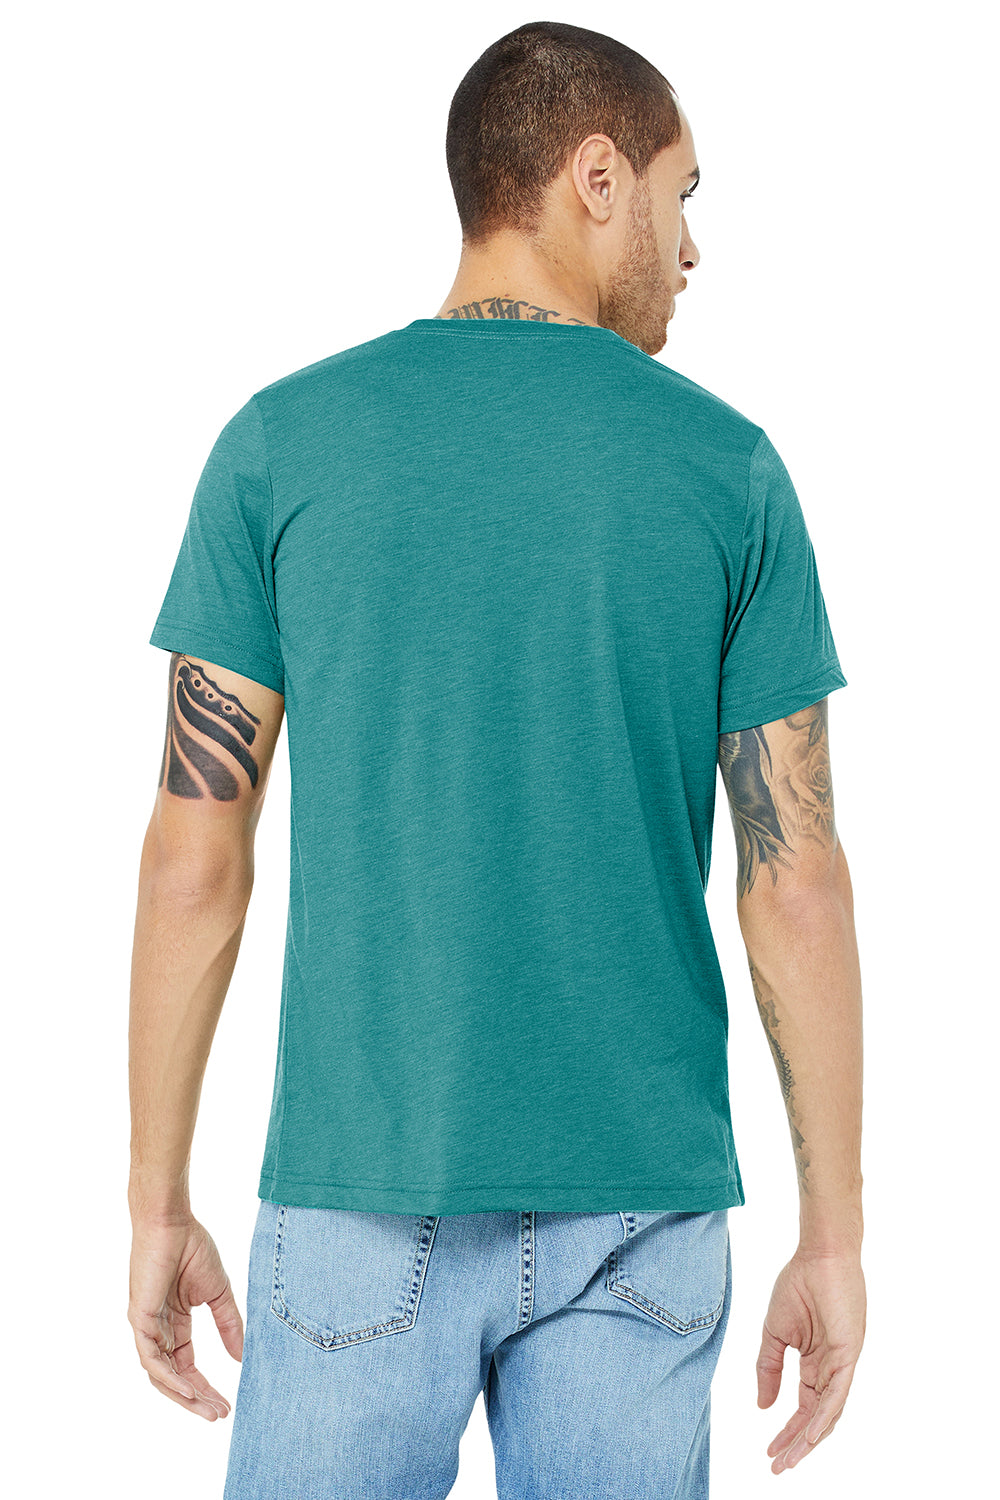 Bella + Canvas BC3413/3413C/3413 Mens Short Sleeve Crewneck T-Shirt Teal Green Model Back